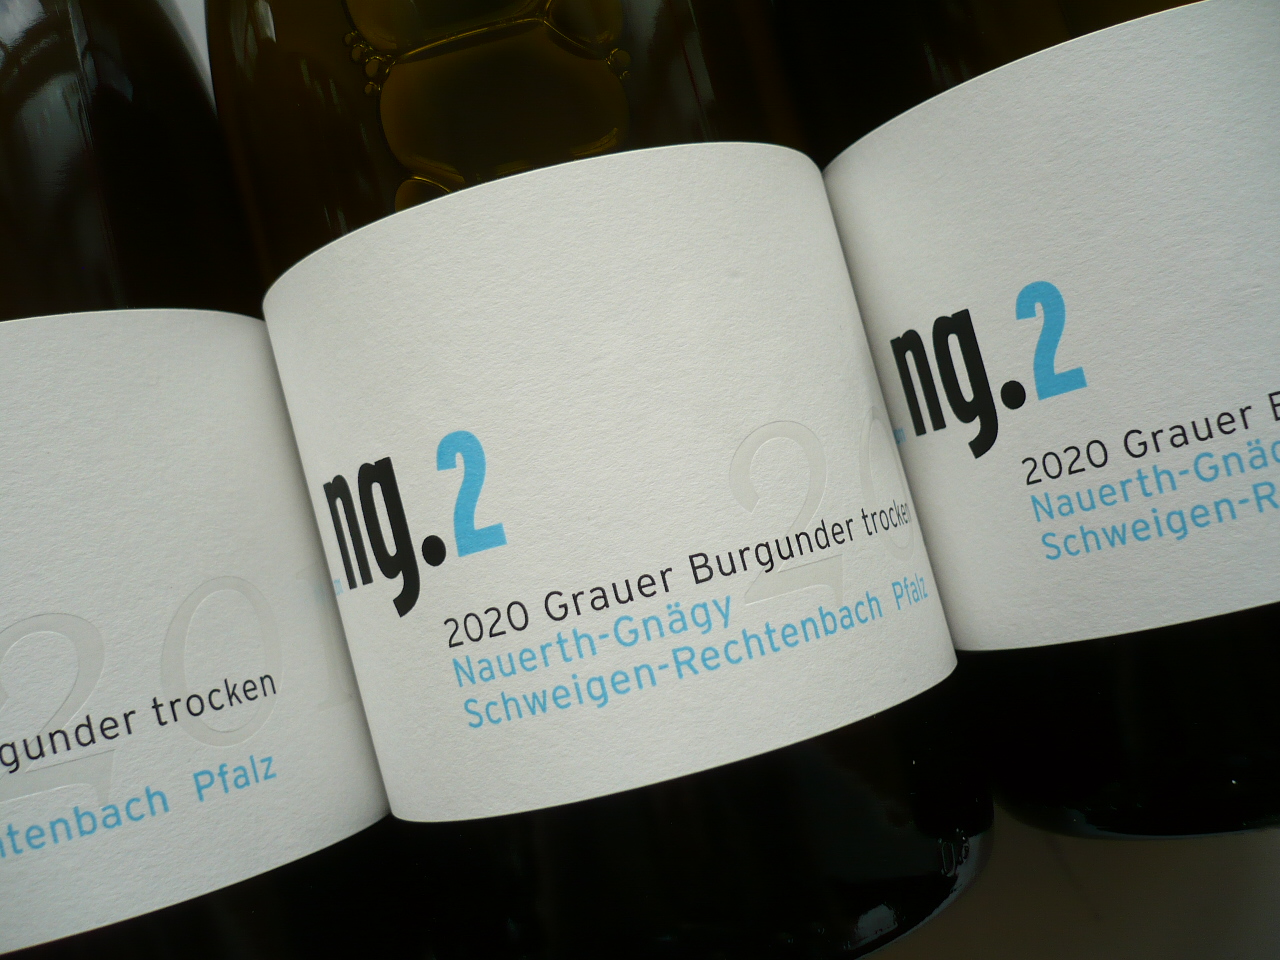 2020er GRAUBURGUNDER "NG.2" trocken, Nauerth-Gnägy (DE-ÖKO-005) -0,75l-